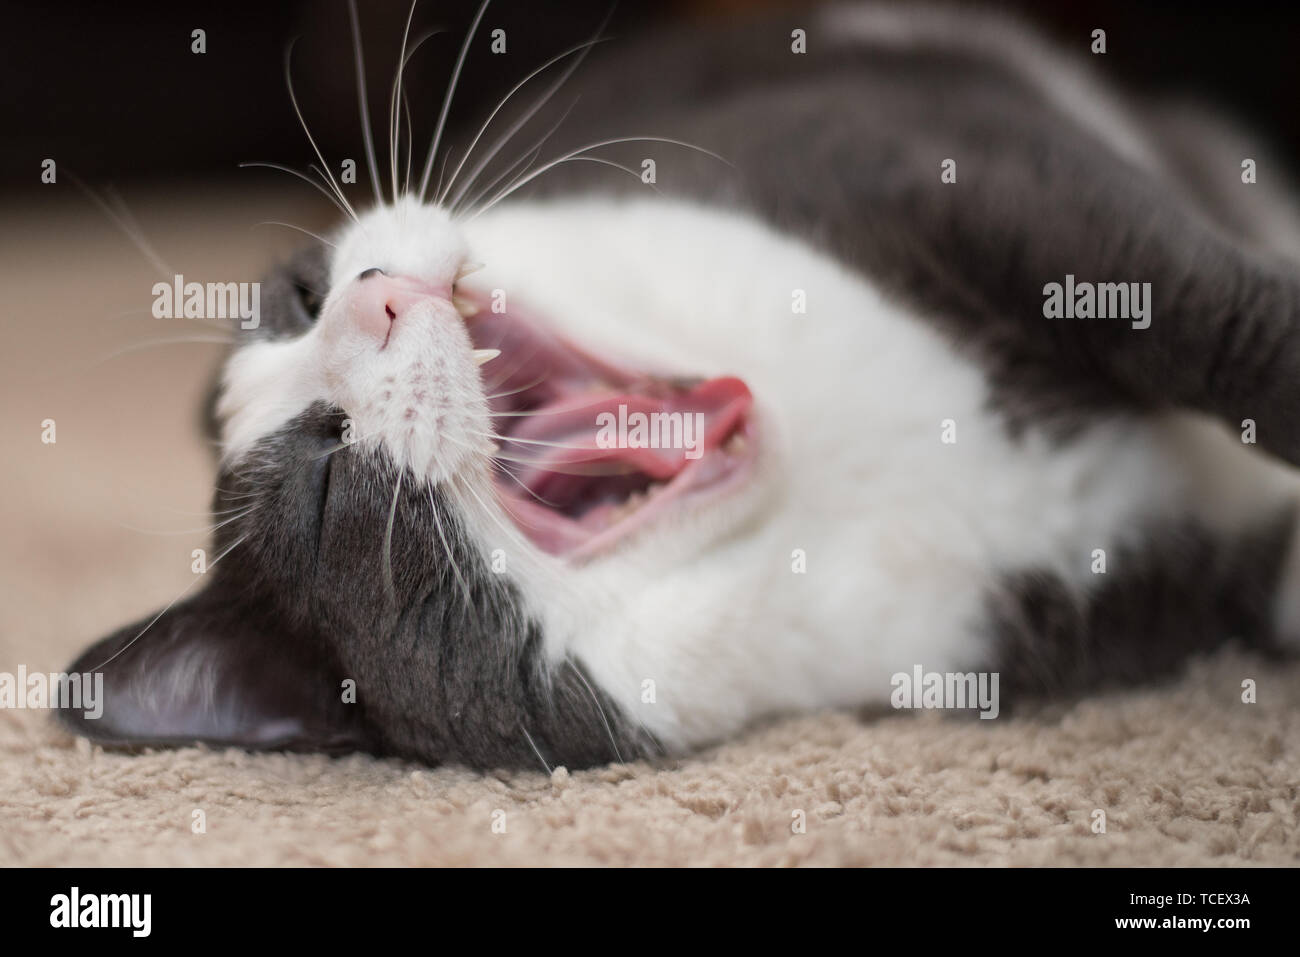 Eine weiße und graue Katze auf Teppich mit geschlossenen Augen Mund weit öffnen Stockfoto